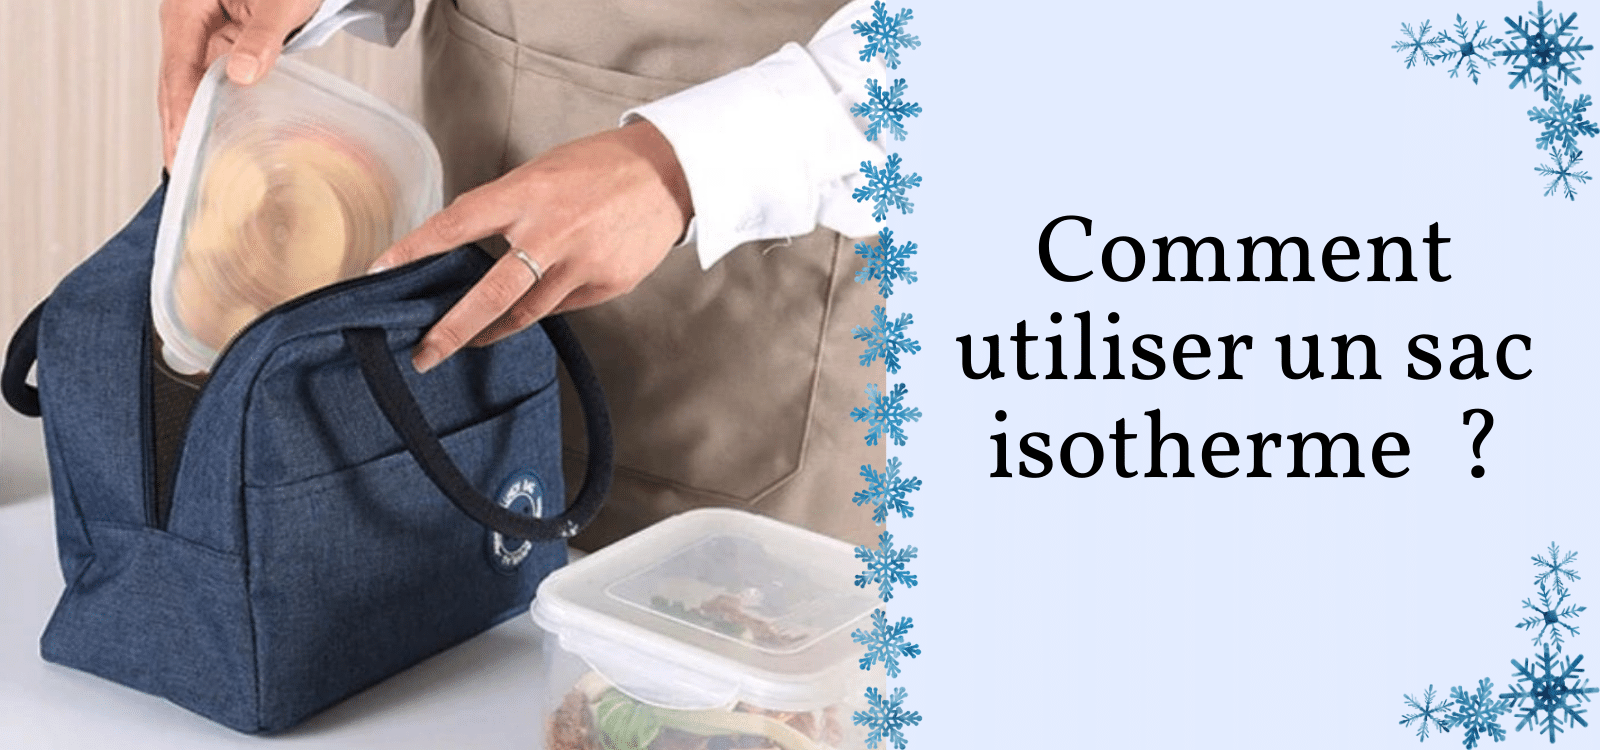 Comment utiliser un sac isotherme